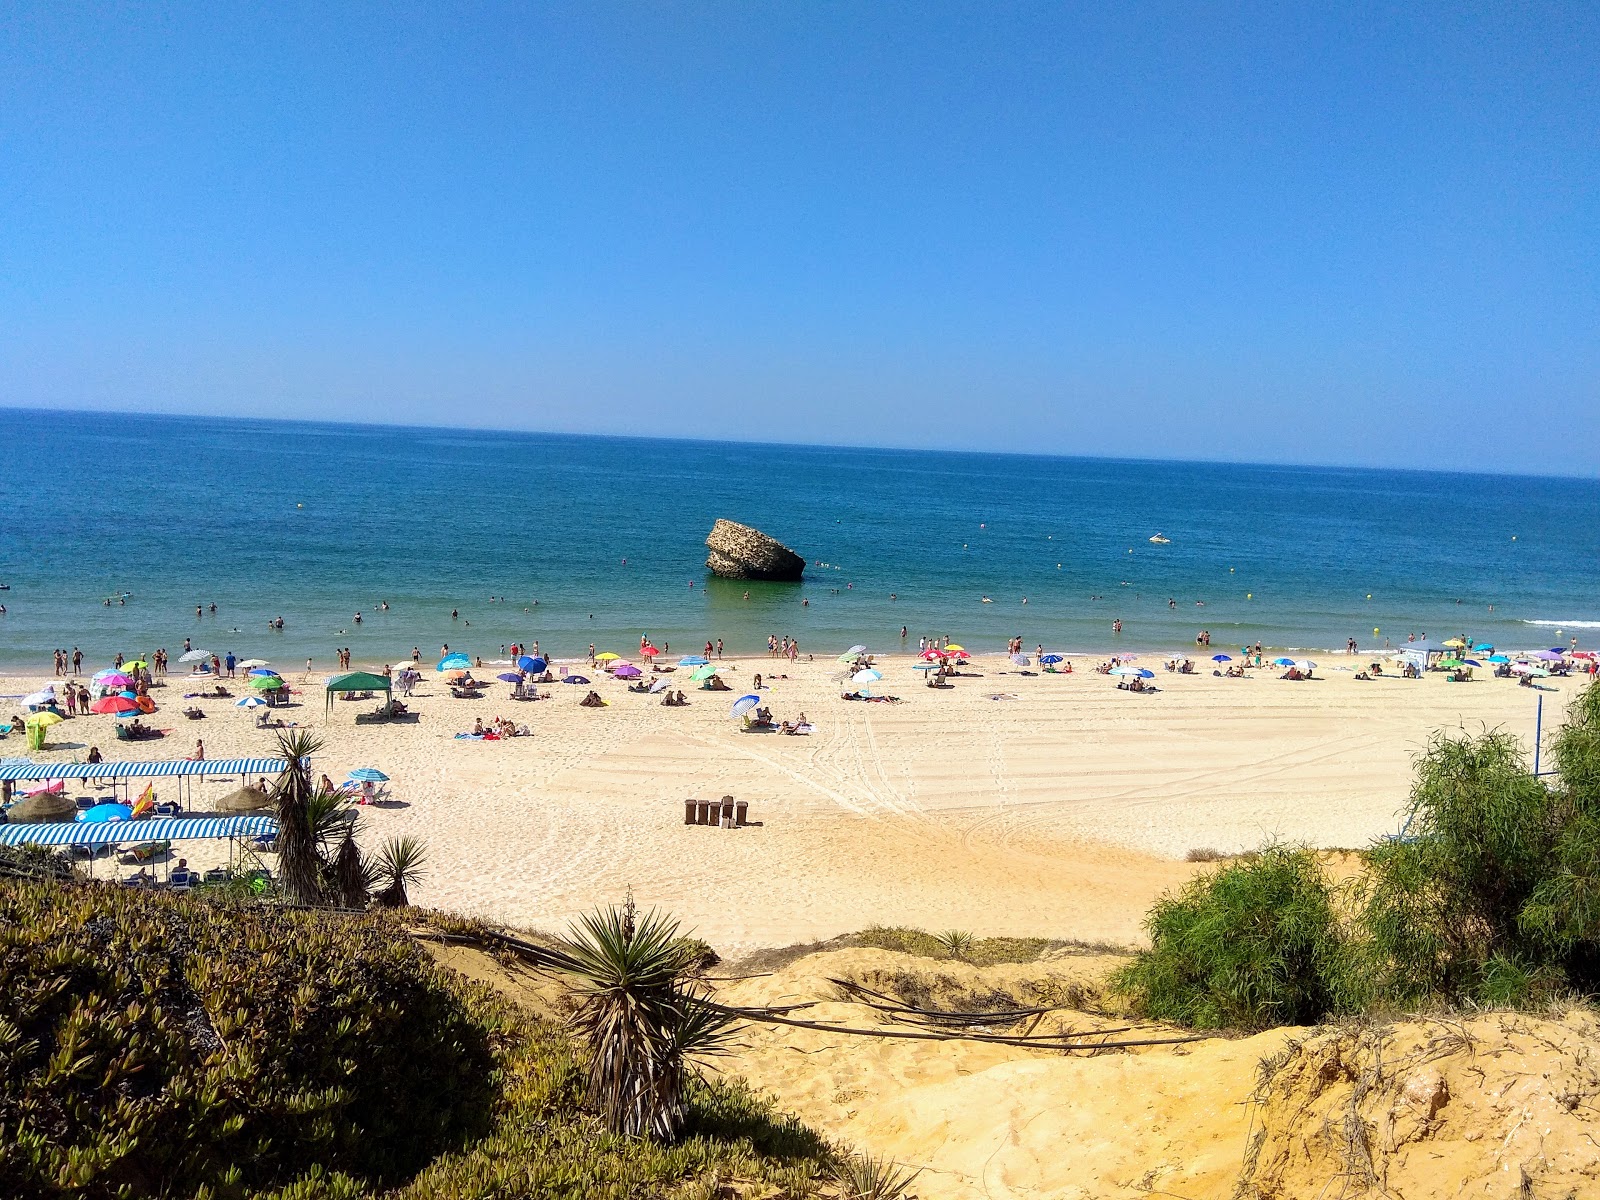 Playa de Matalascanas'in fotoğrafı parlak kum yüzey ile